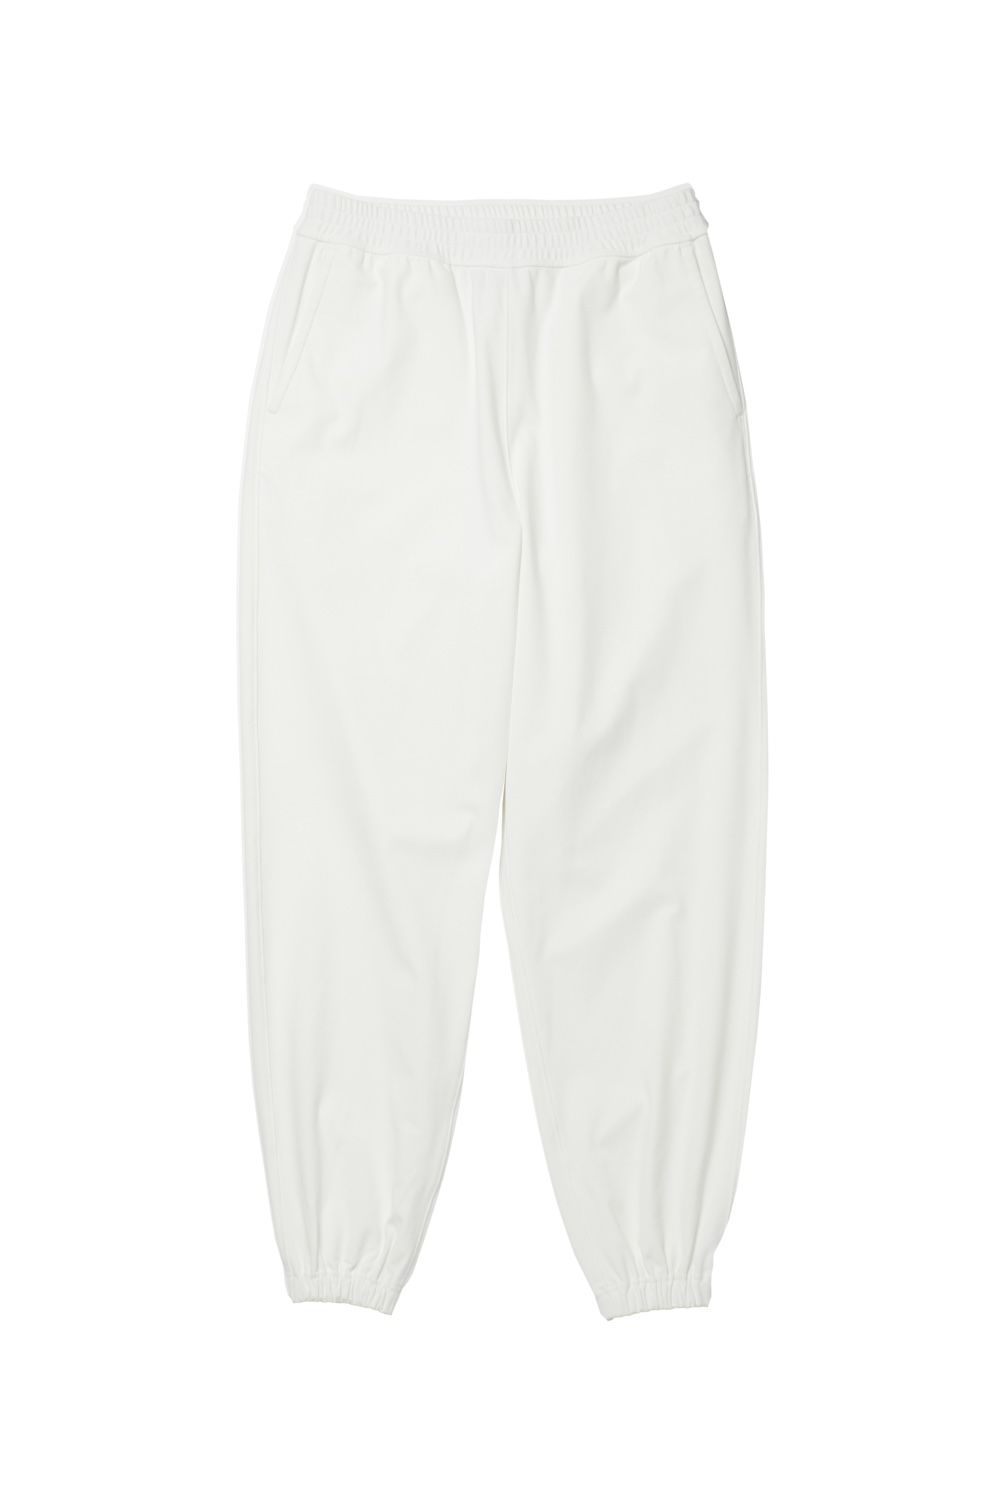 DAIWA PIER39 - w's tech flex jersey pants -white- 23ss women